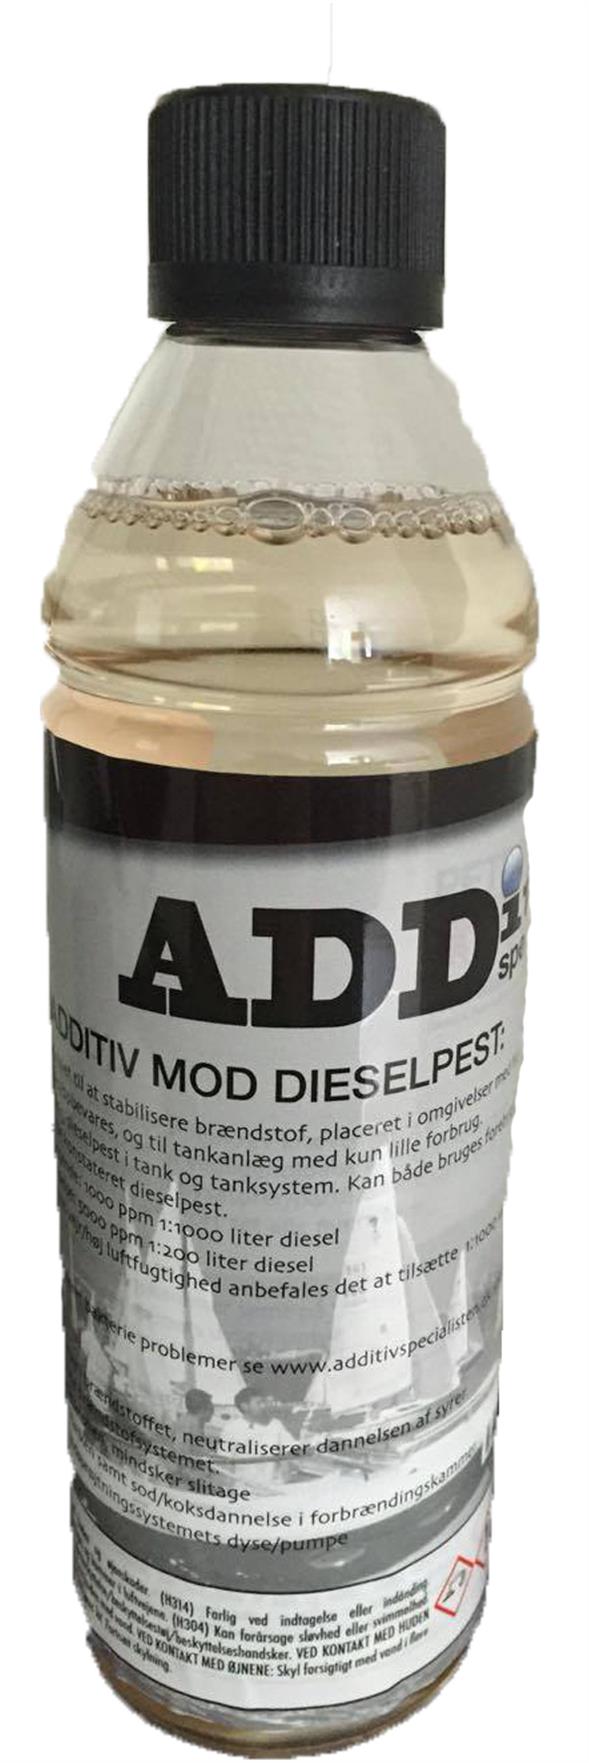 Diesel Additiv mod Dieselpest MA3350